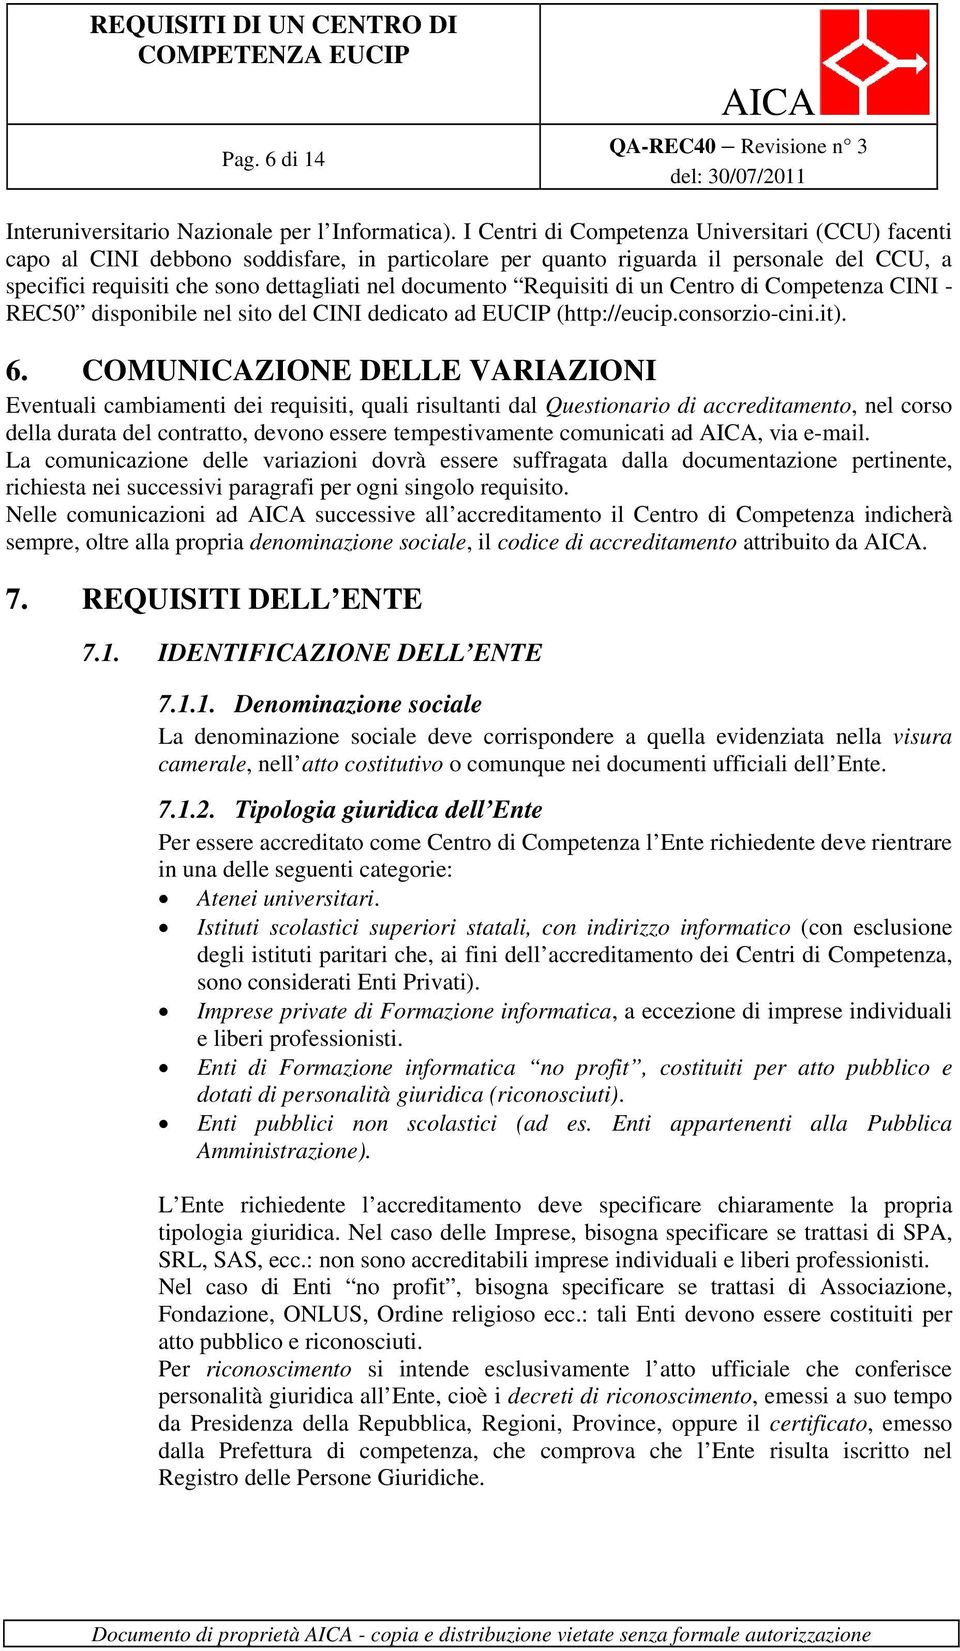 Requisiti di un Centro di Competenza CINI - REC50 disponibile nel sito del CINI dedicato ad EUCIP (http://eucip.consorzio-cini.it). 6.